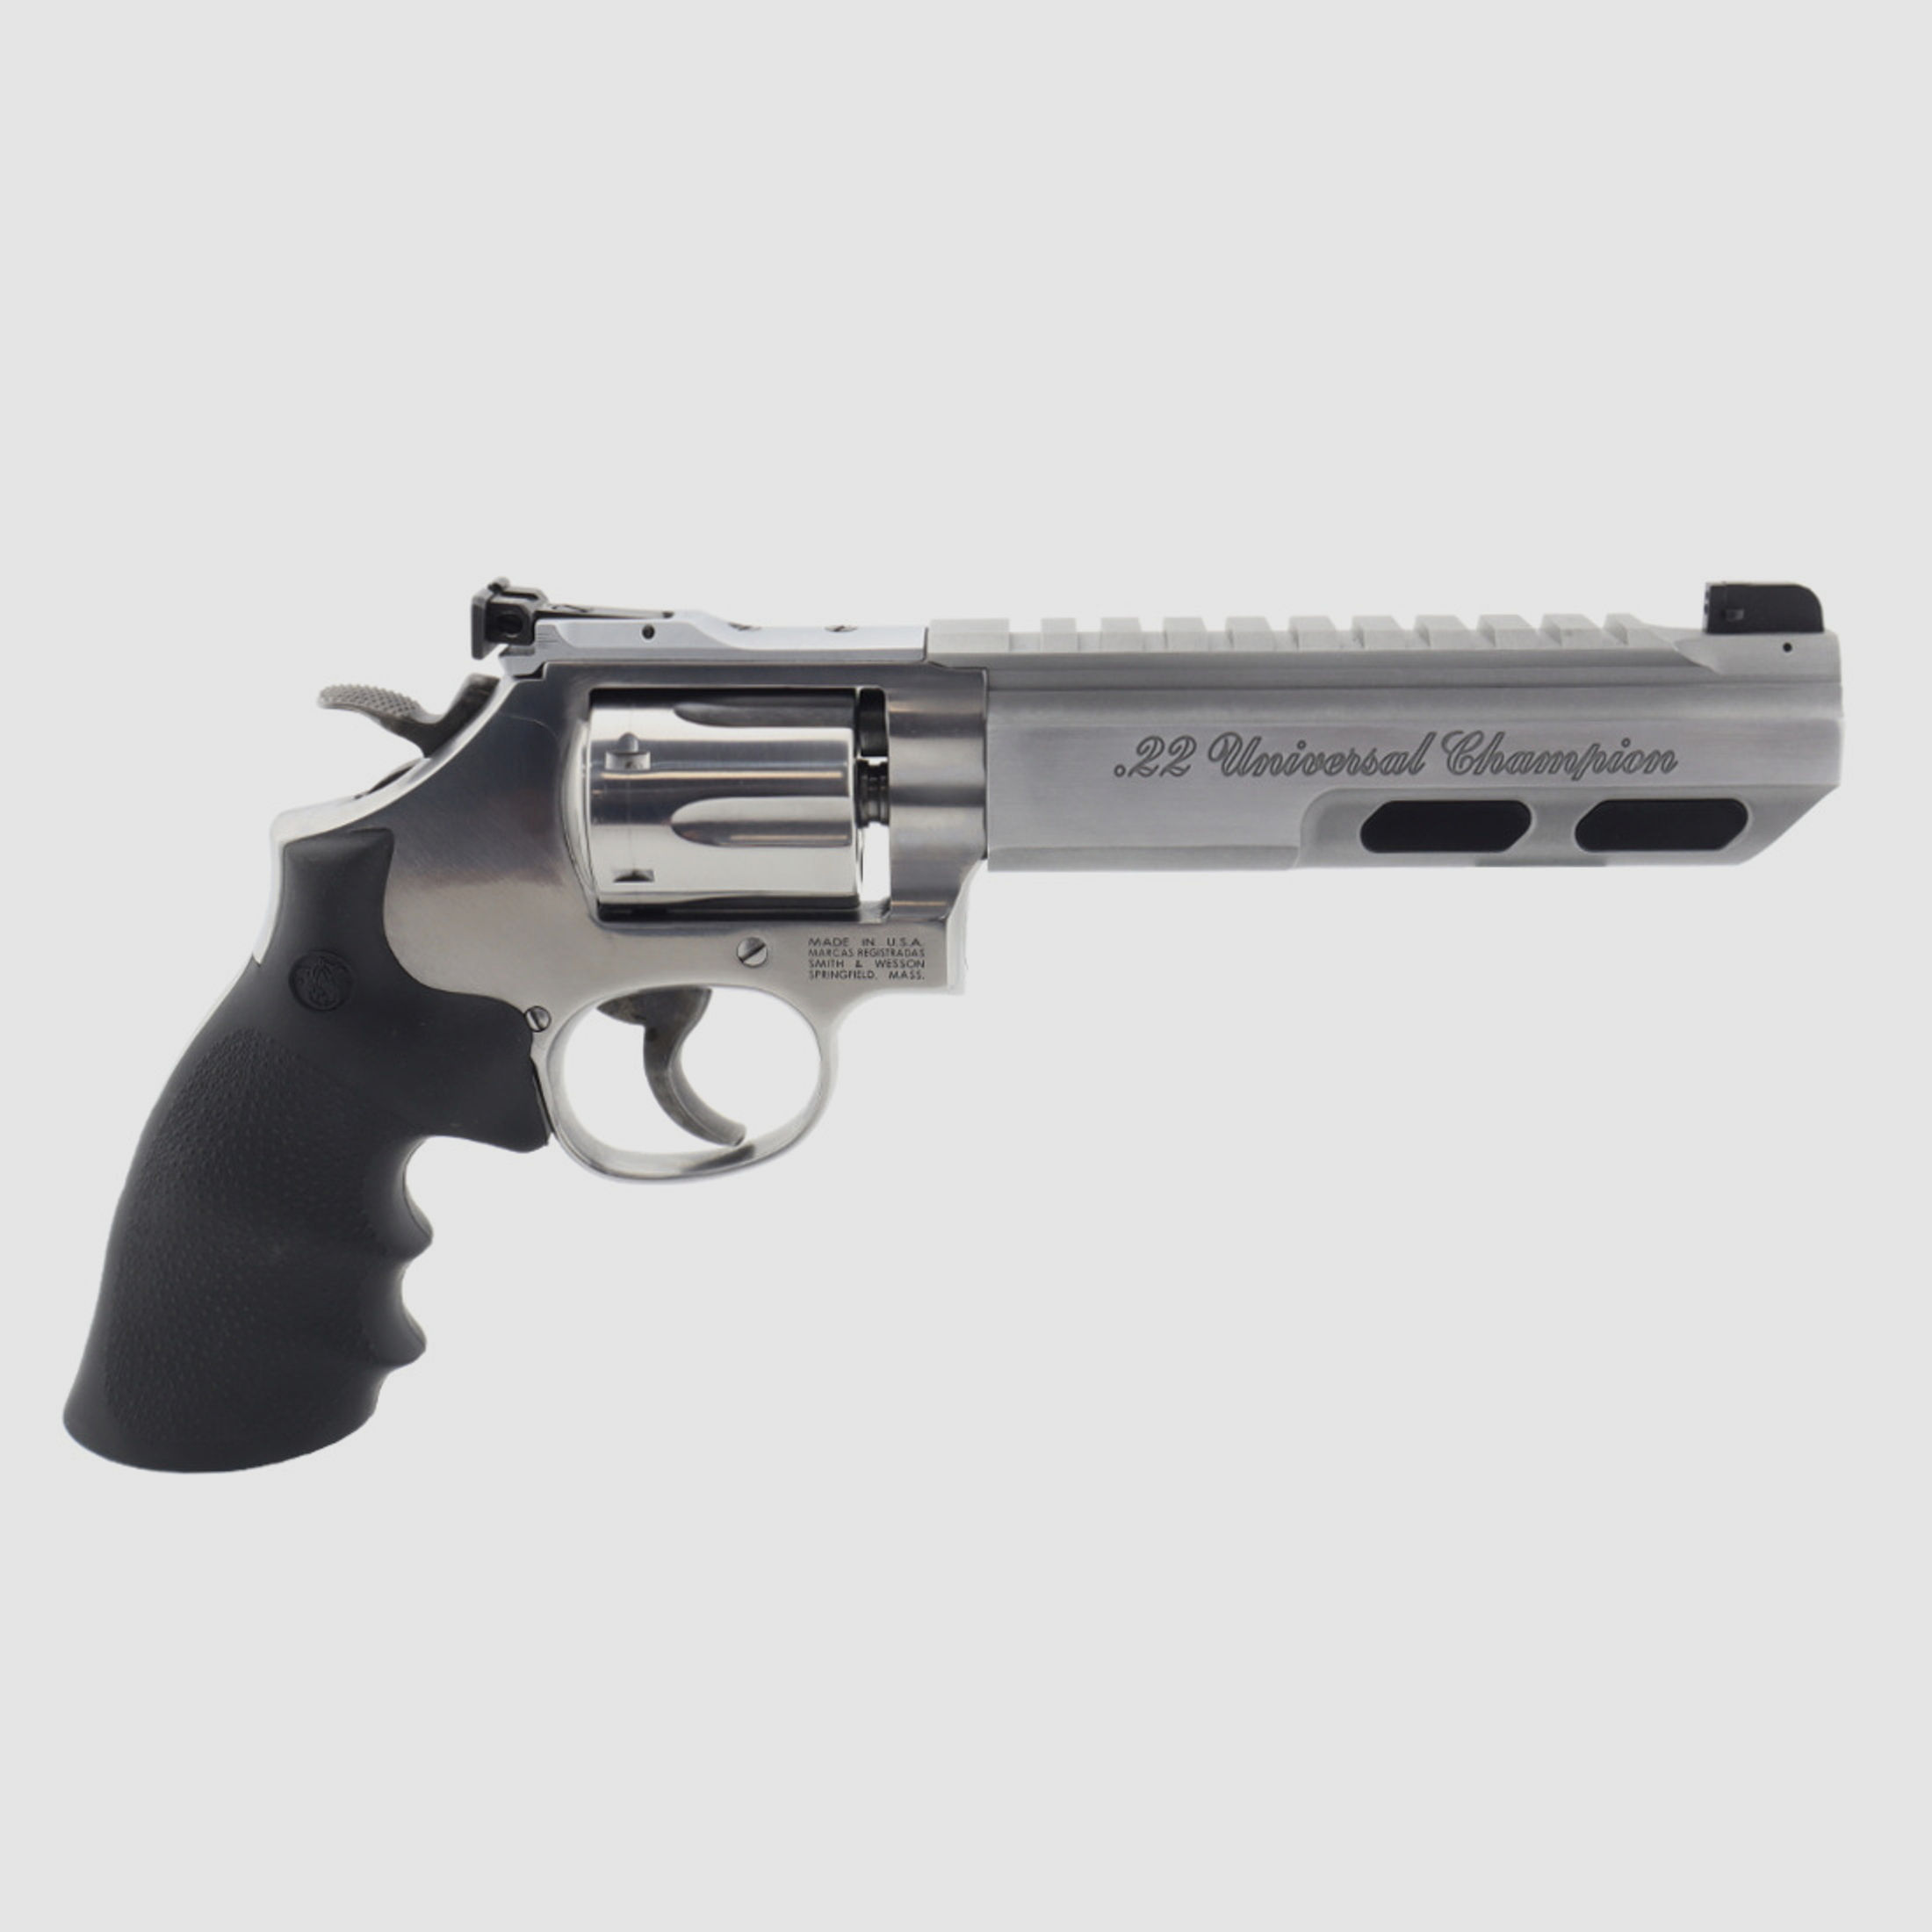  Smith & Wesson  617 Universal Champion S&W Kleinkaliber Revolver KK